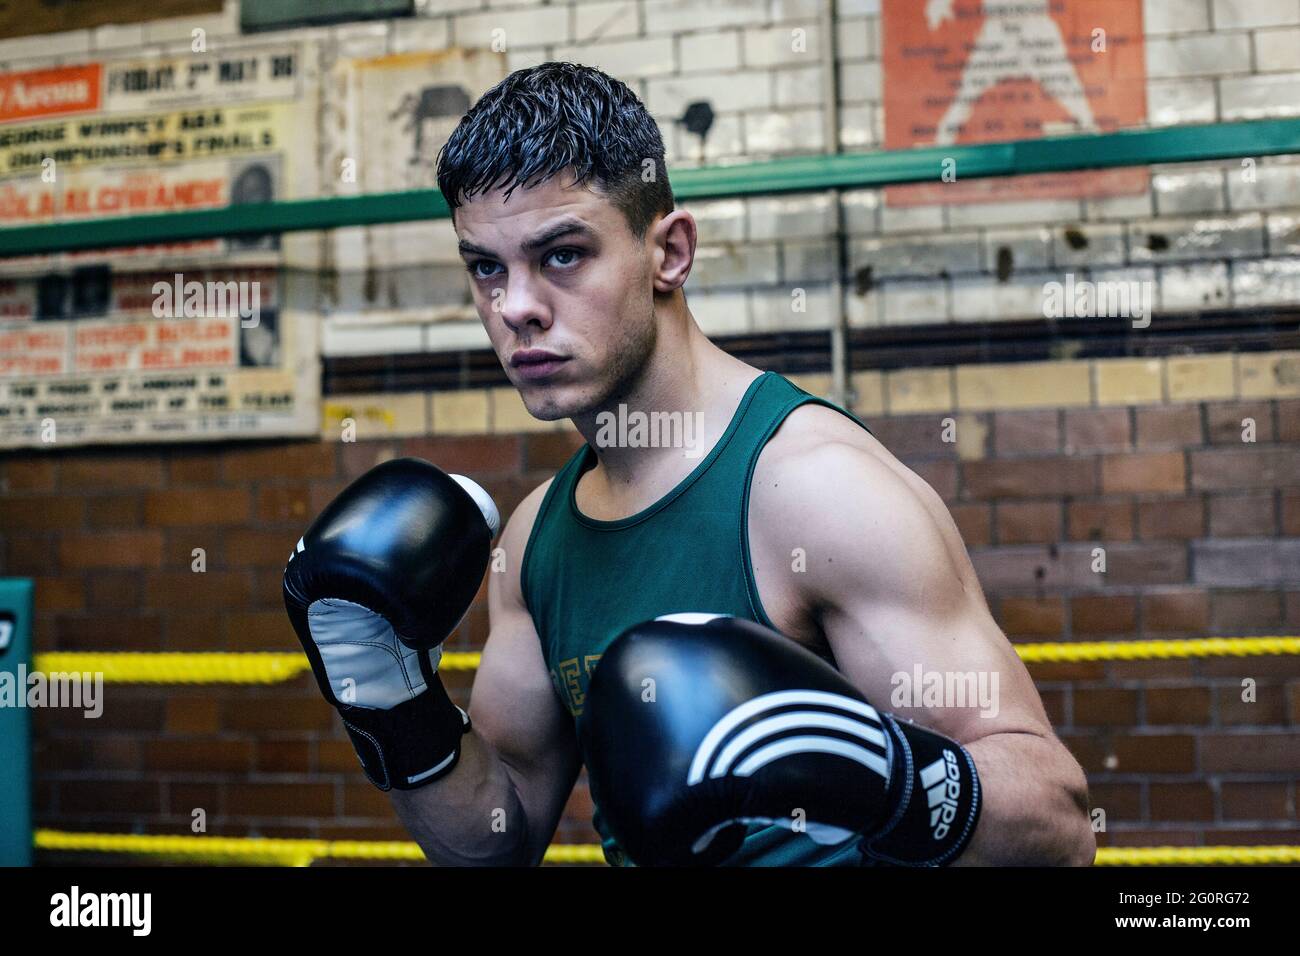 Jeune homme sportif se préparant aux compétitions de boxe, à l'entraînement de défense et aux attaques dans le club de boxe. Banque D'Images